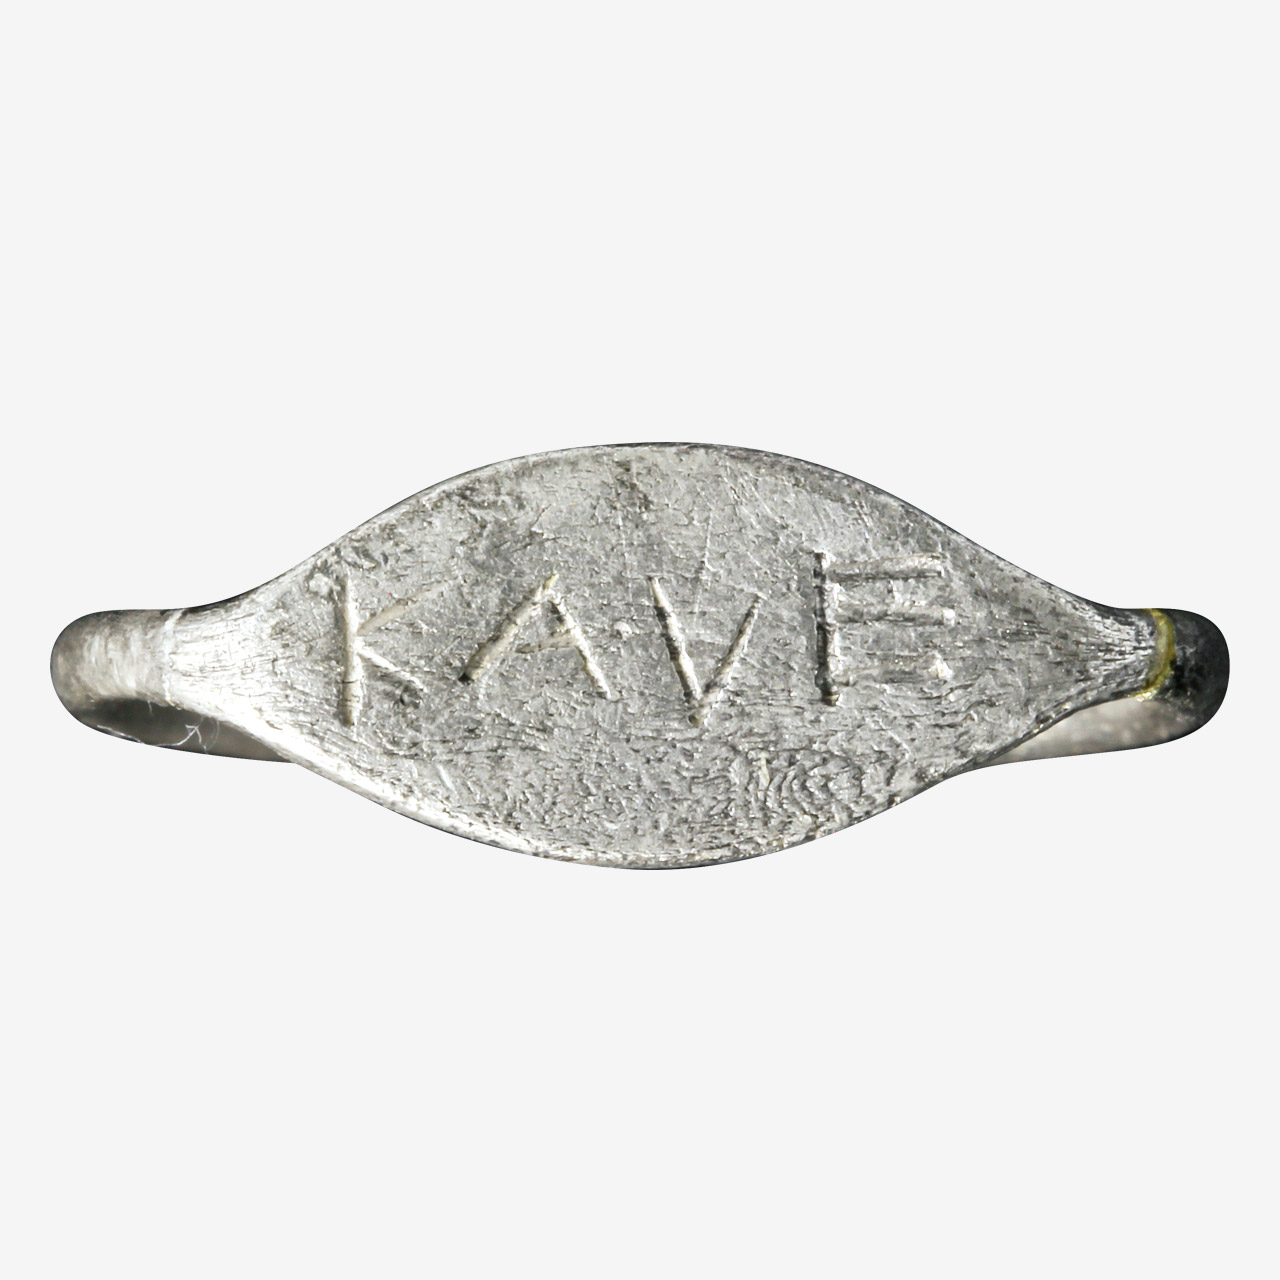 Αργυρό σφυρήλατο δαχτυλίδι με την εγχάρακτη επιγραφή ΚΑΛΕ, δηλαδή ΚΑΛΗ, επάνω στη σφενδόνη.